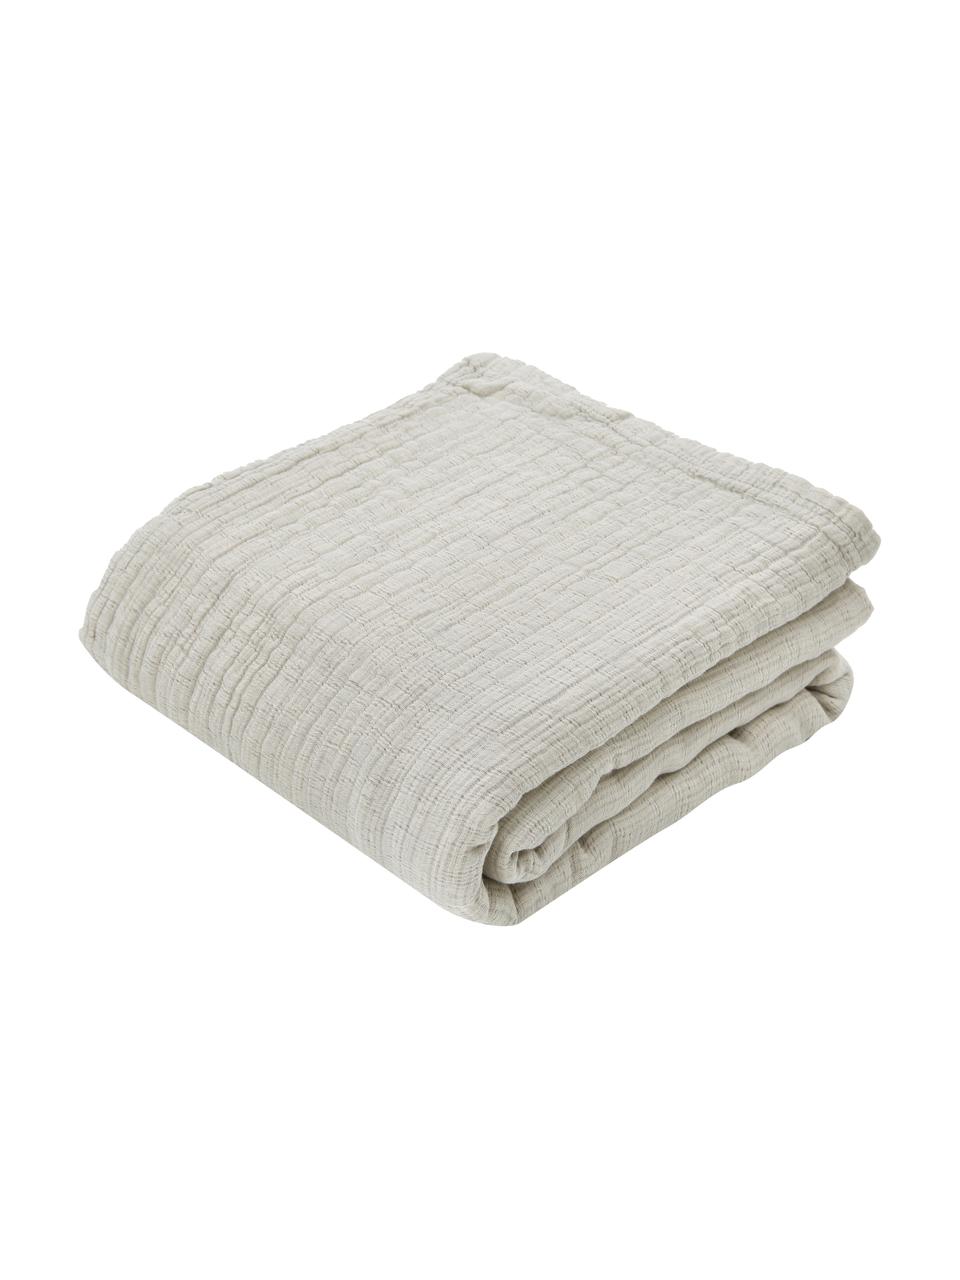 Tagesdecke Liv aus weichem Baumwollmusselin, 100% Baumwolle, Hellgrau, Beige, B 260 x L 260 cm (für Betten bis 200 x 200 cm)